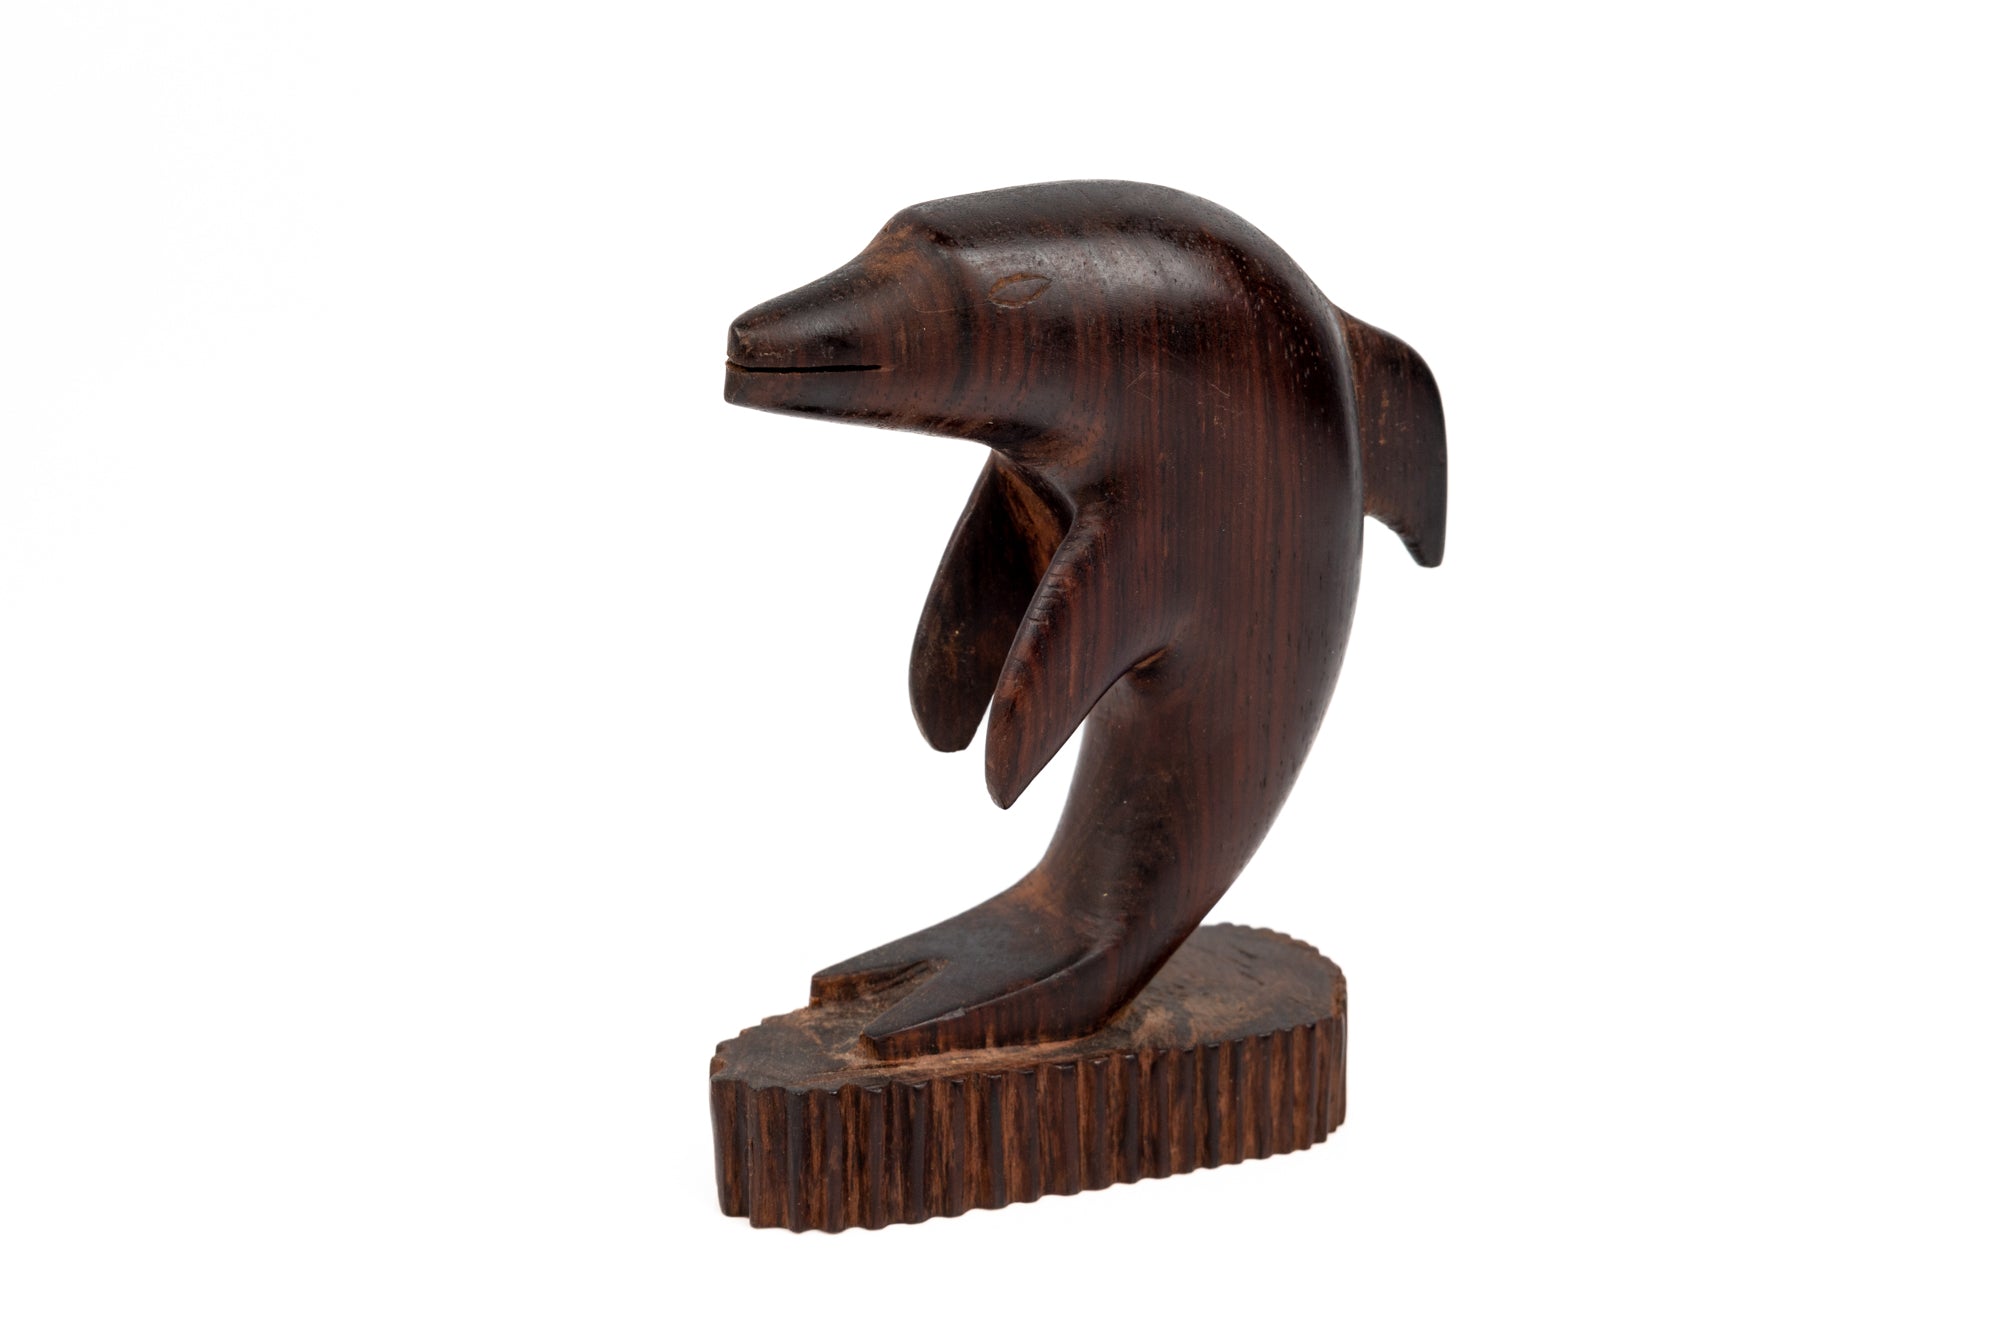 Sailfish Figurine, Wood Carving